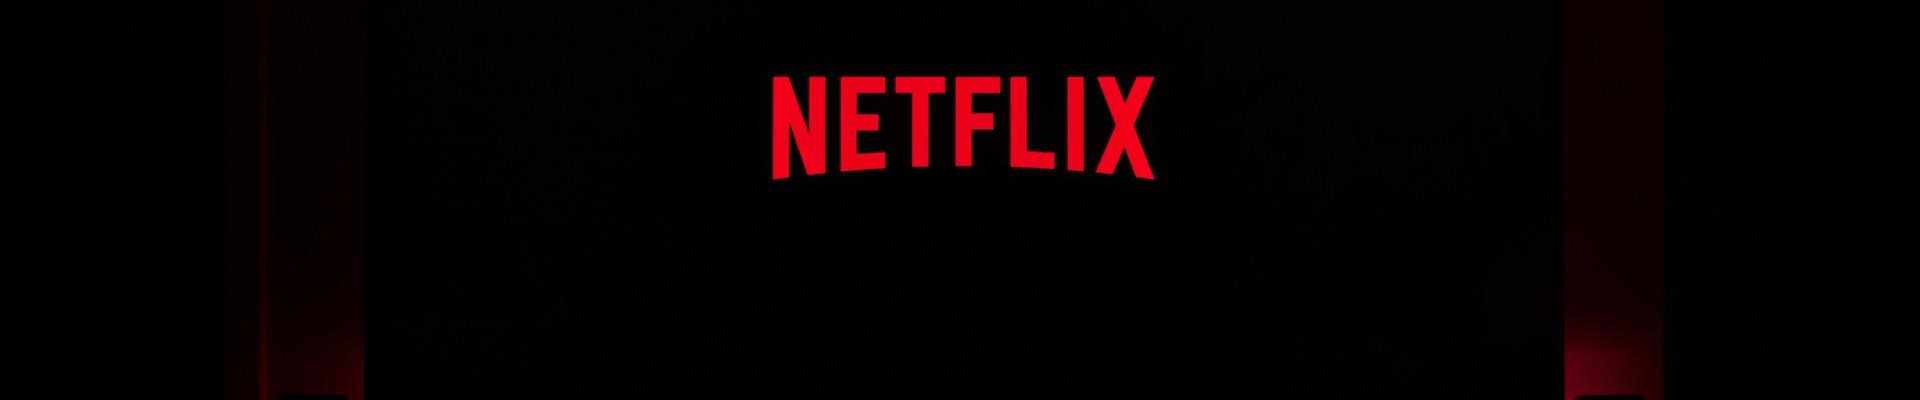 Netflix mostra primeiras imagens dos lançamentos em animação para 2023 e  2024 - About Netflix